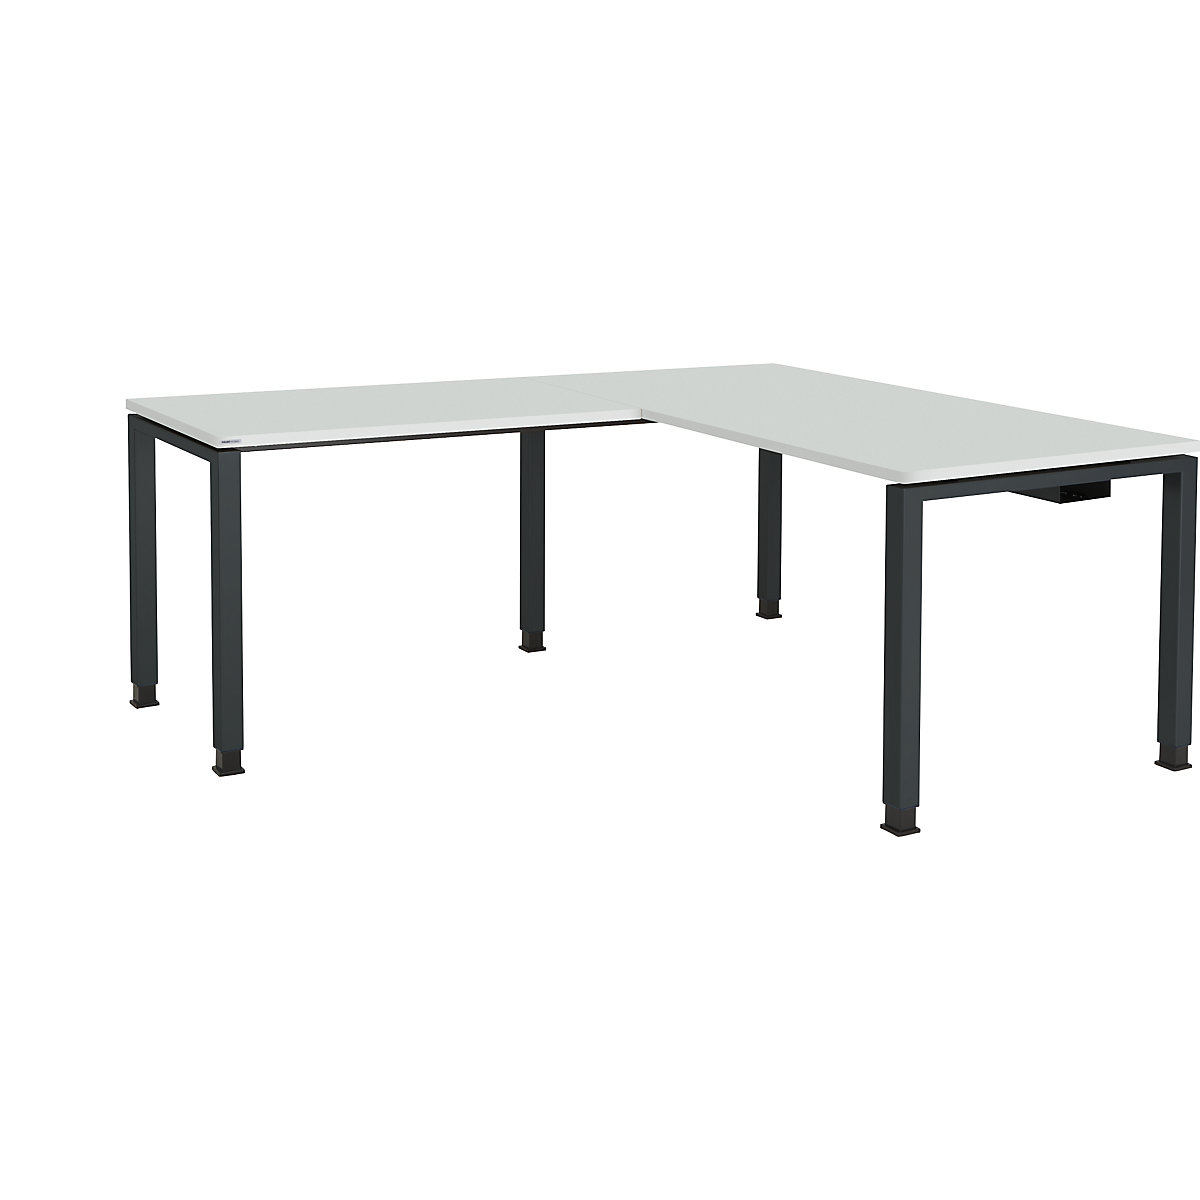 Kombinovaný psací stůl s nohami ze čtvercové/obdélníkové trubky – mauser